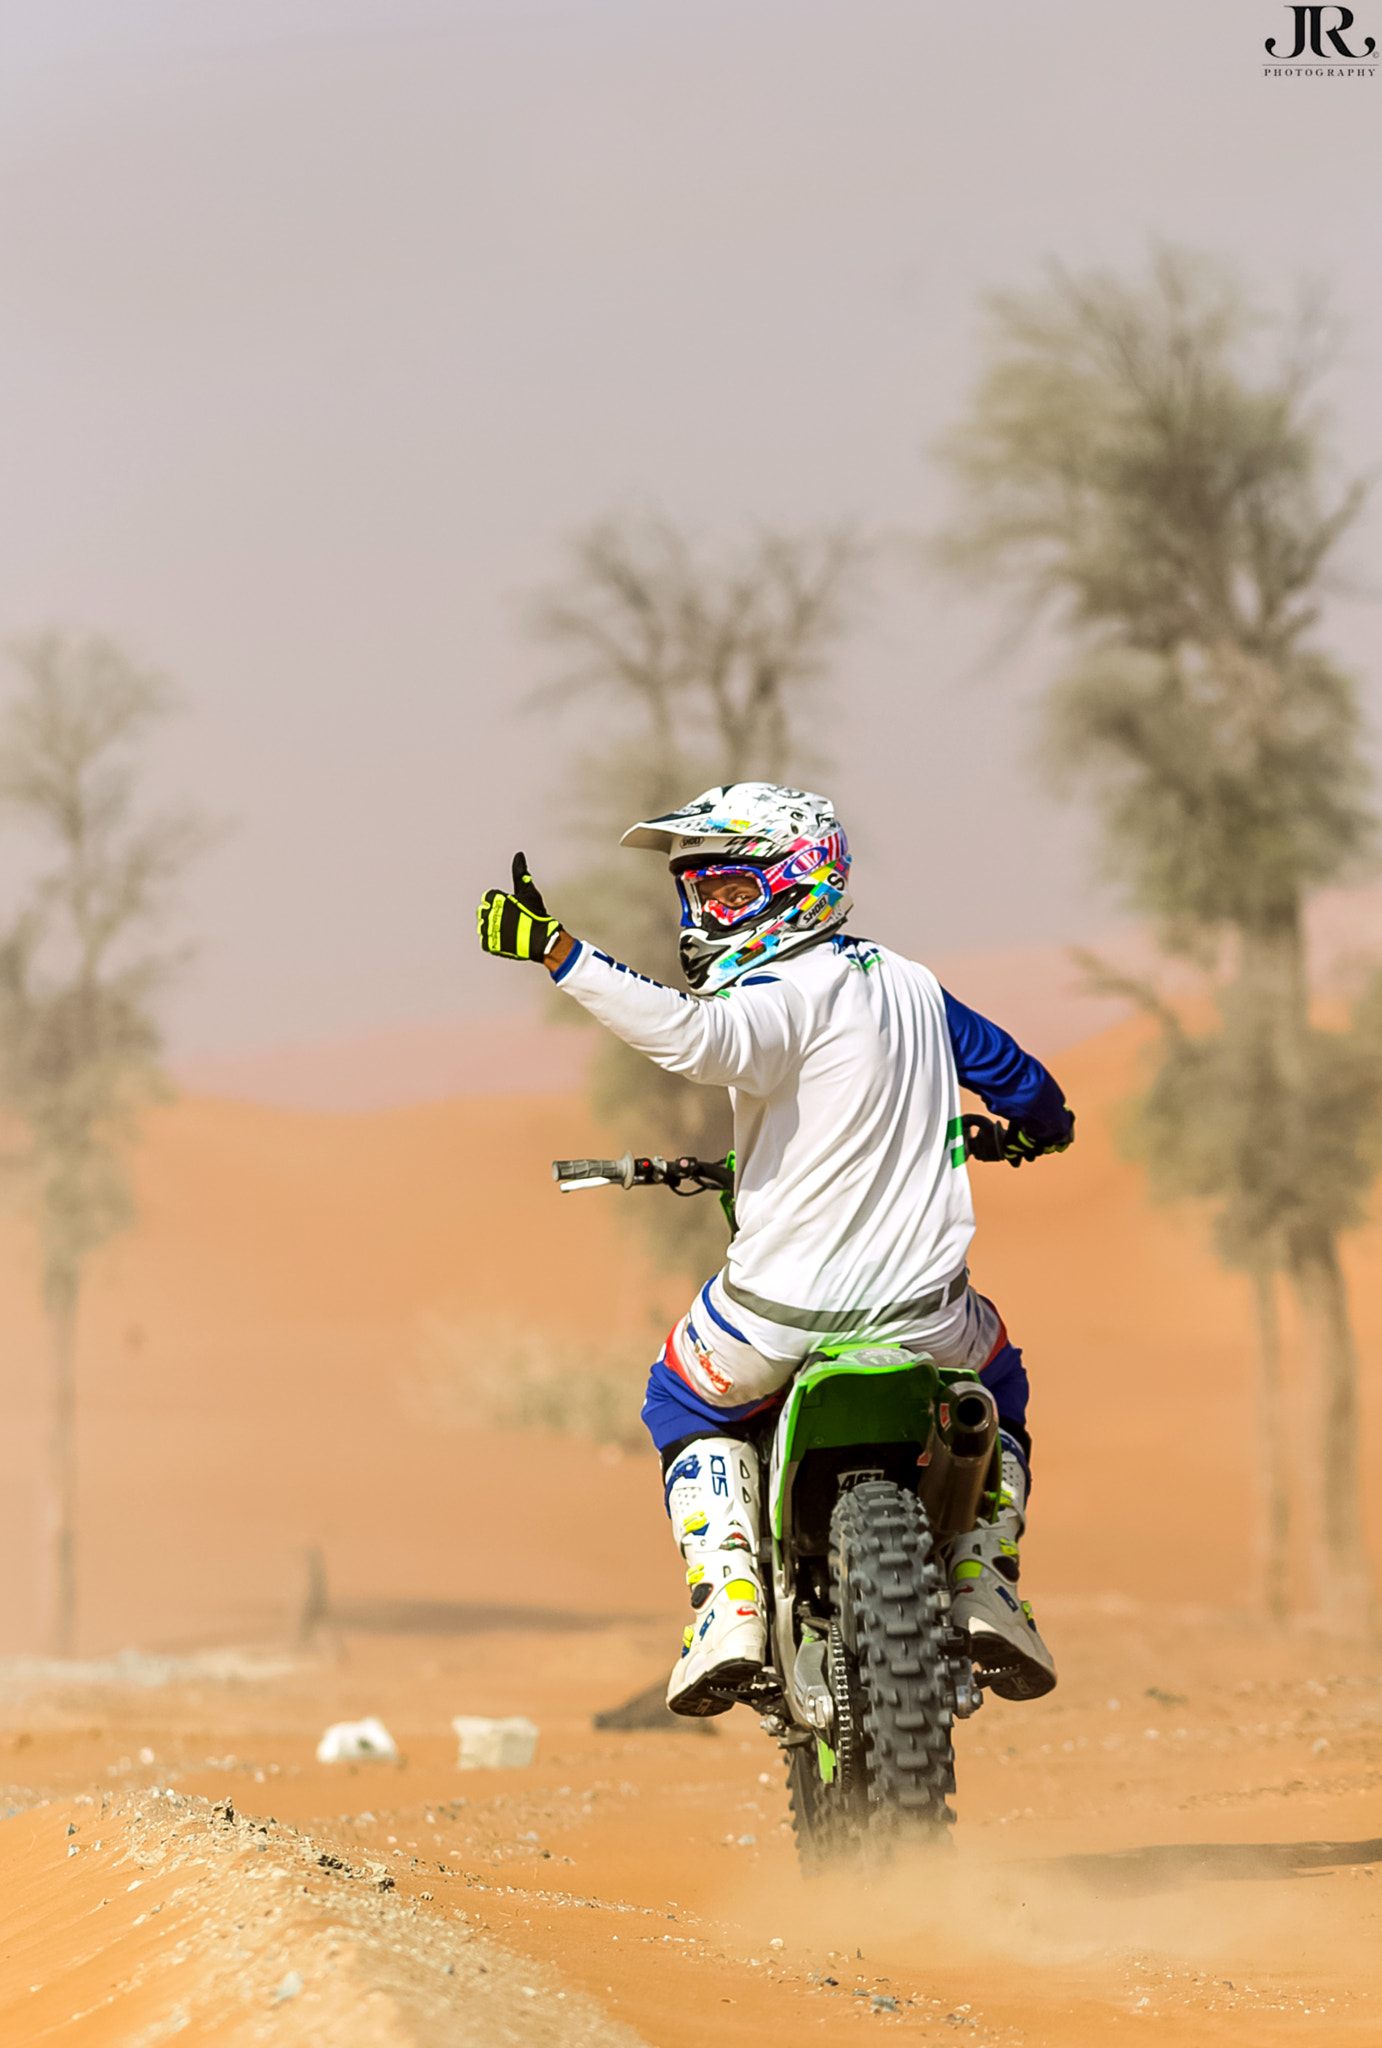 Canon EOS 60D sample photo. "desert rider" photography